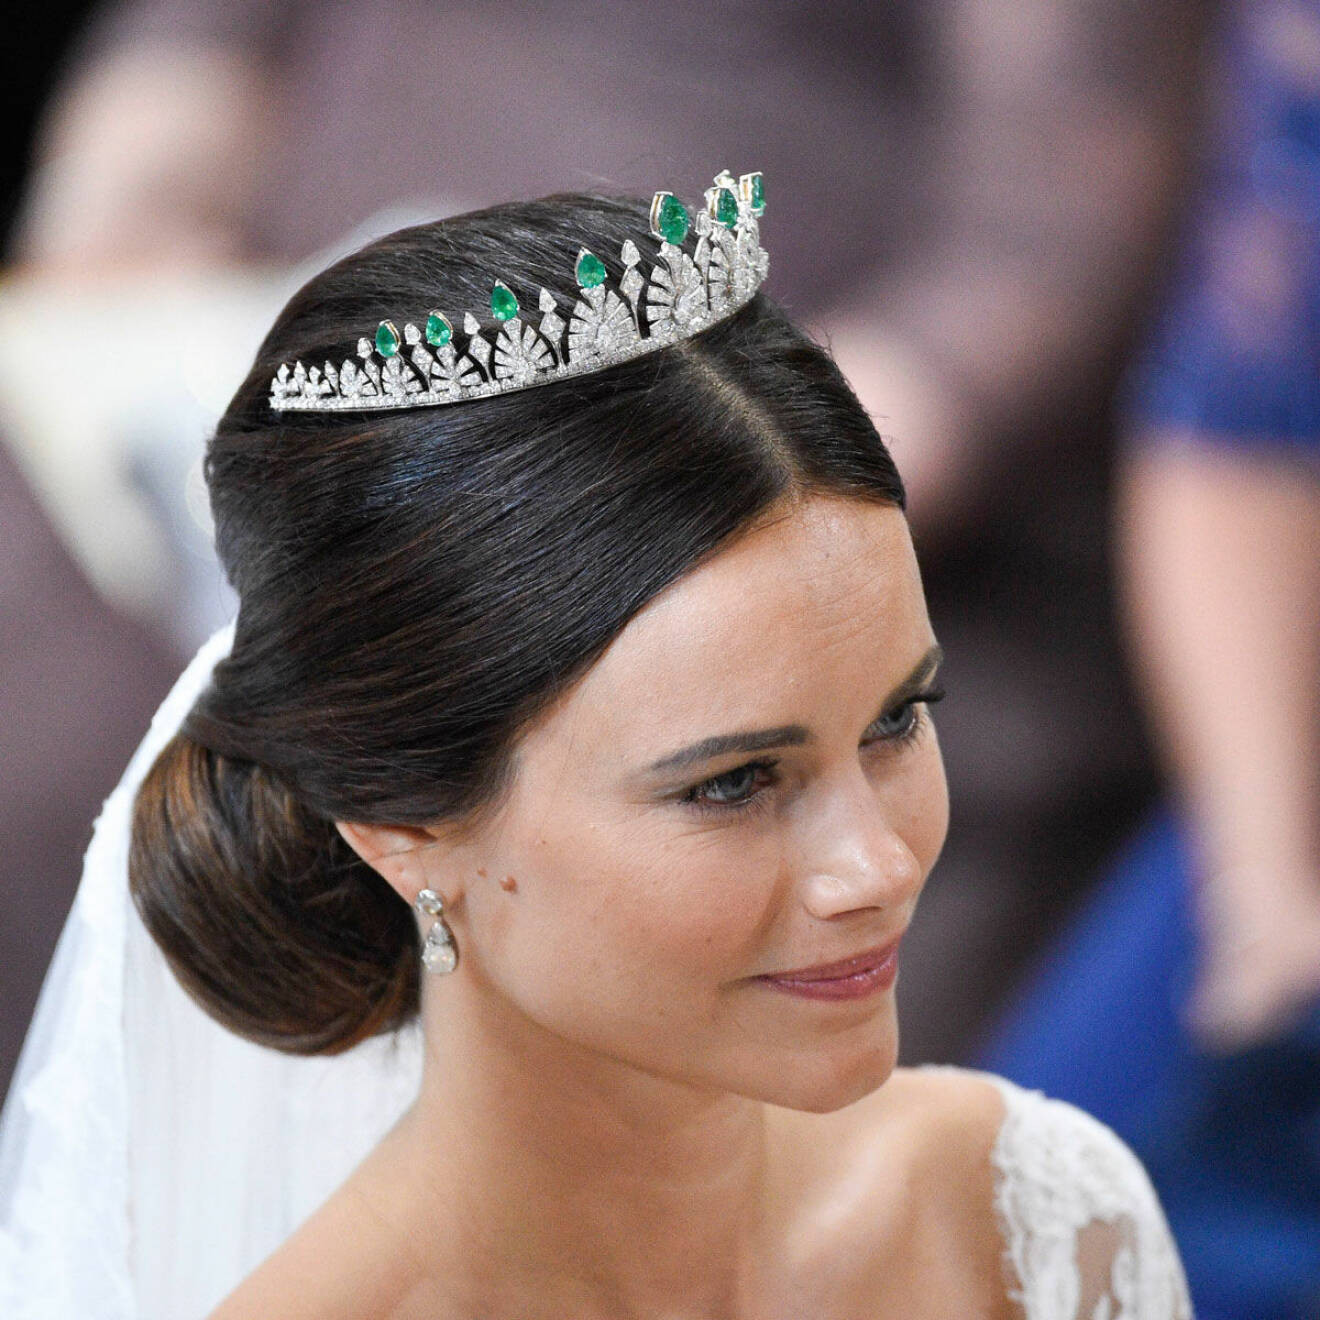 Många trodde att Sofia skulle låna en tiara, men istället bar hon en ny som visade sig vara en present från kungaparet. Tiaran är ett omgjort halsband som drottningen en gång fick vid ett statsbesök i Thailand.